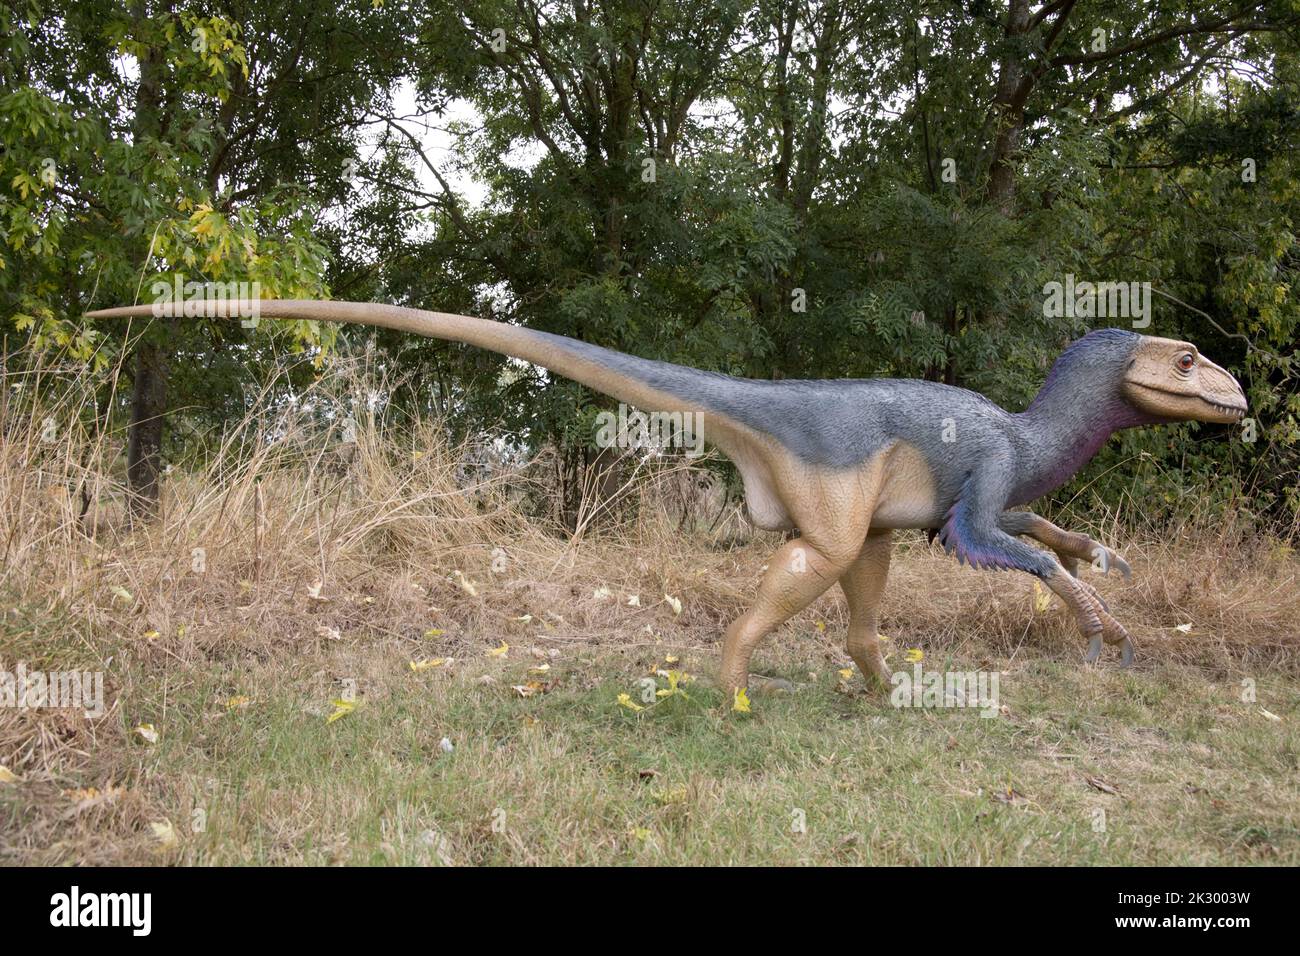 Modèle LifeSize de Deinonychus un petit dinosaure théropode carnivore All Things Wild, Honeybourne, Royaume-Uni Banque D'Images